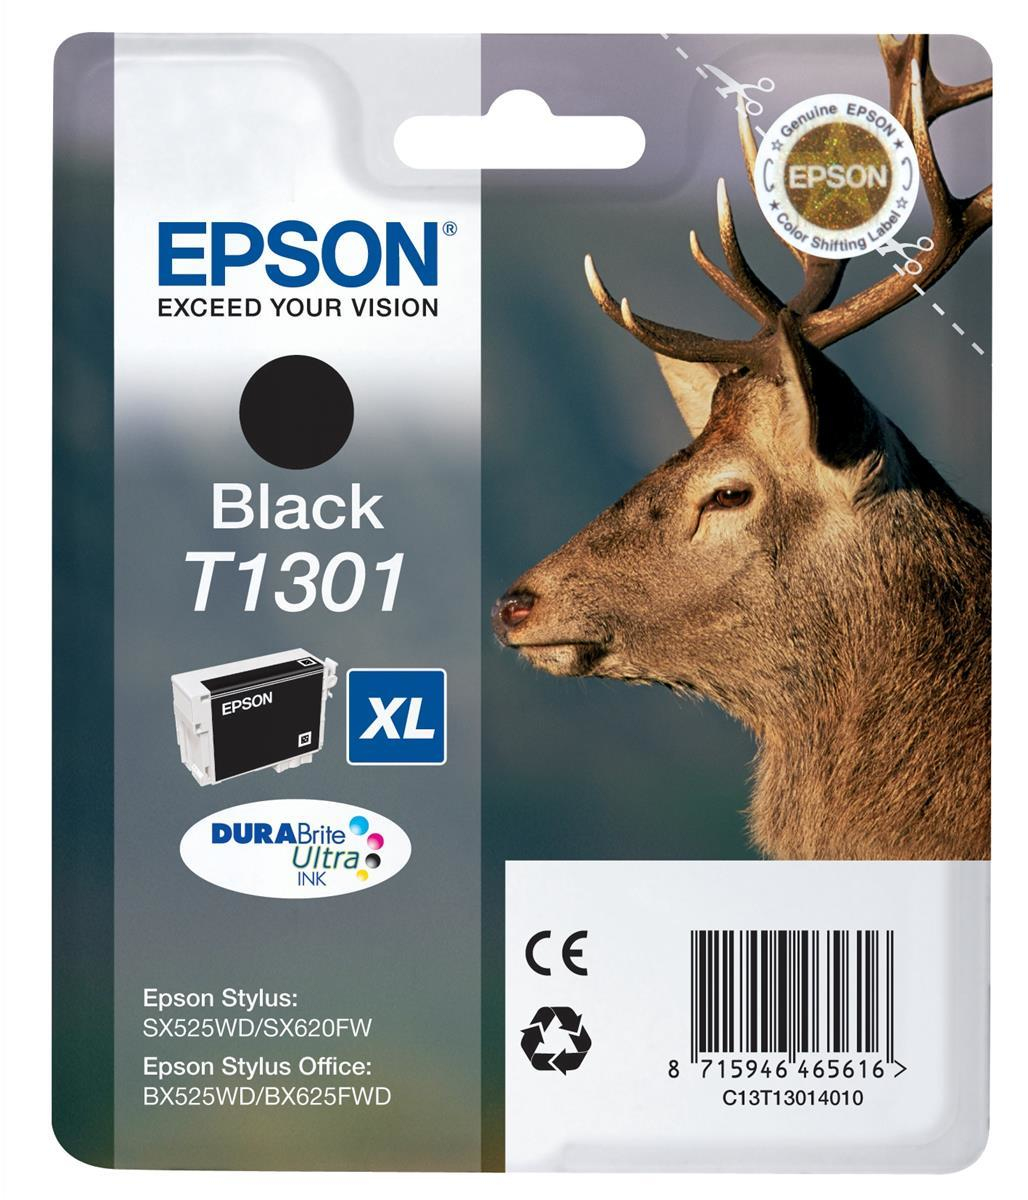 Epson inktpatroon Black T1301 DURABrite Ultra Ink